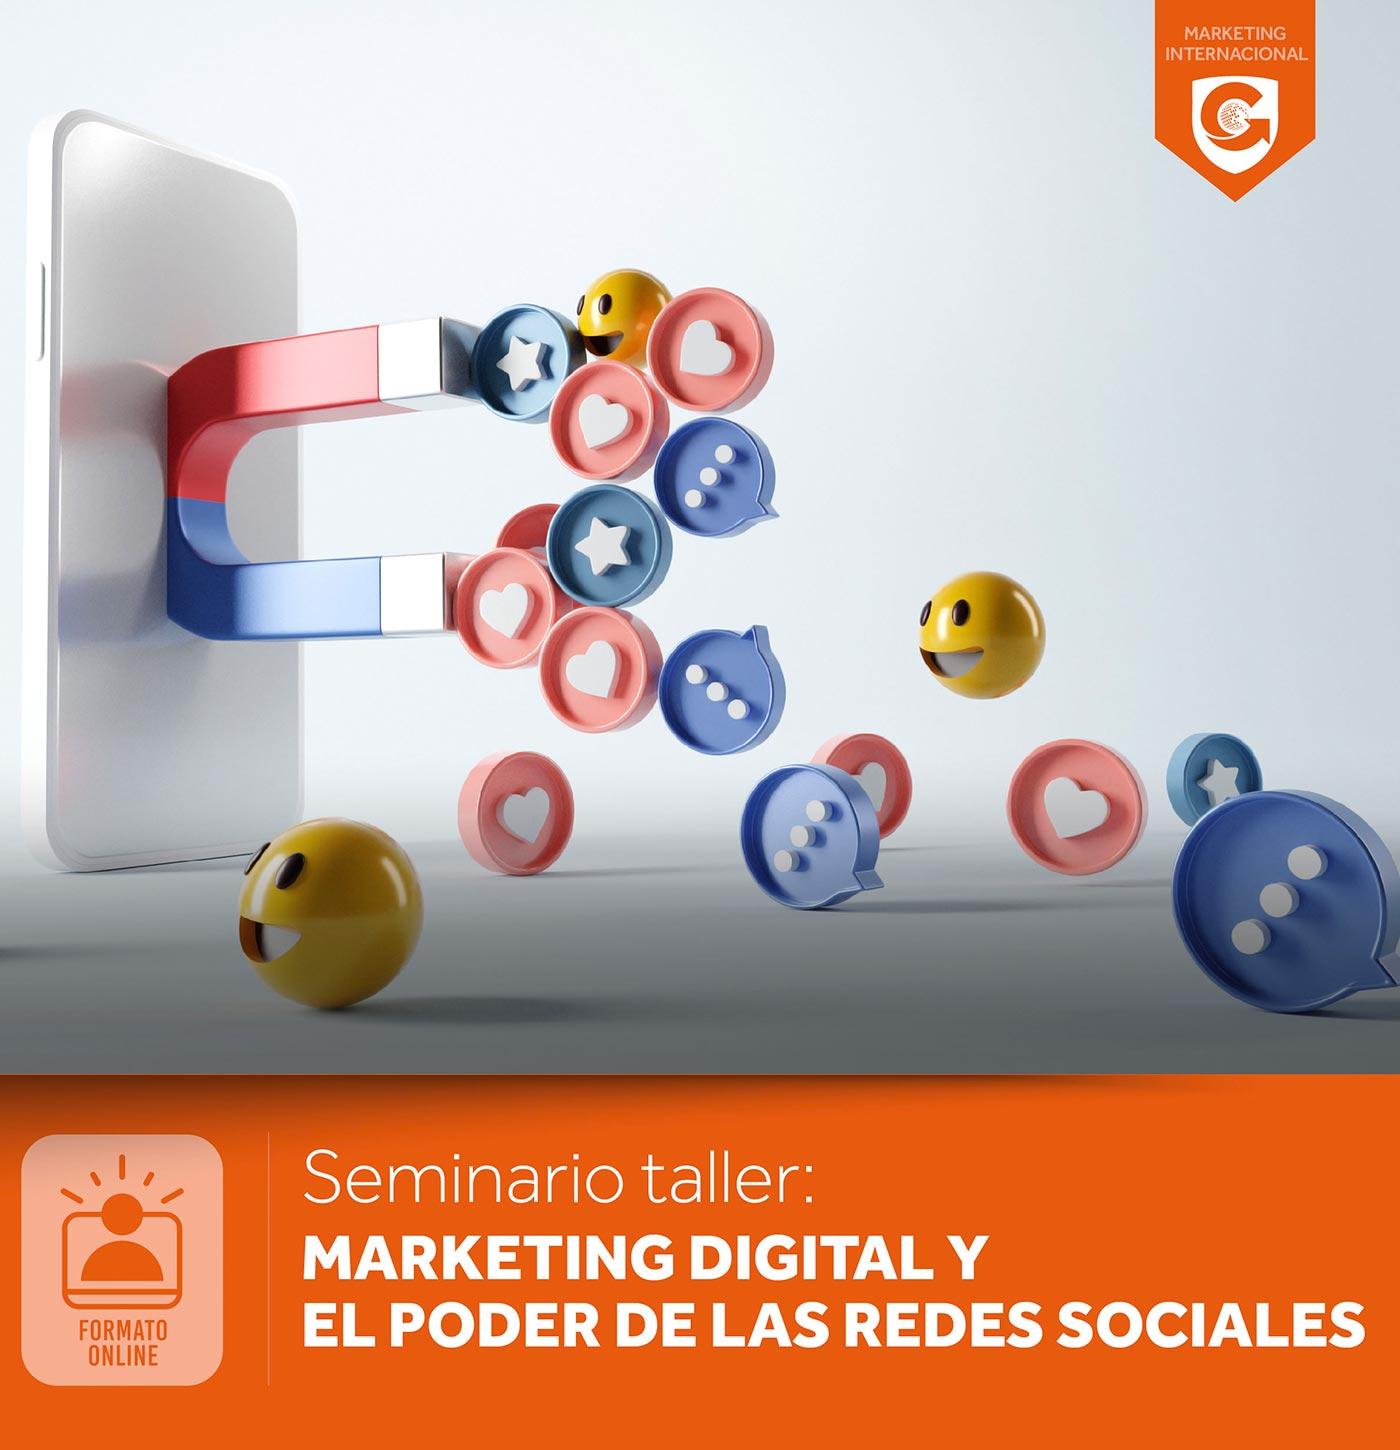 Seminario taller: MARKETING DIGITAL Y EL PODER DE LAS REDES SOCIALES